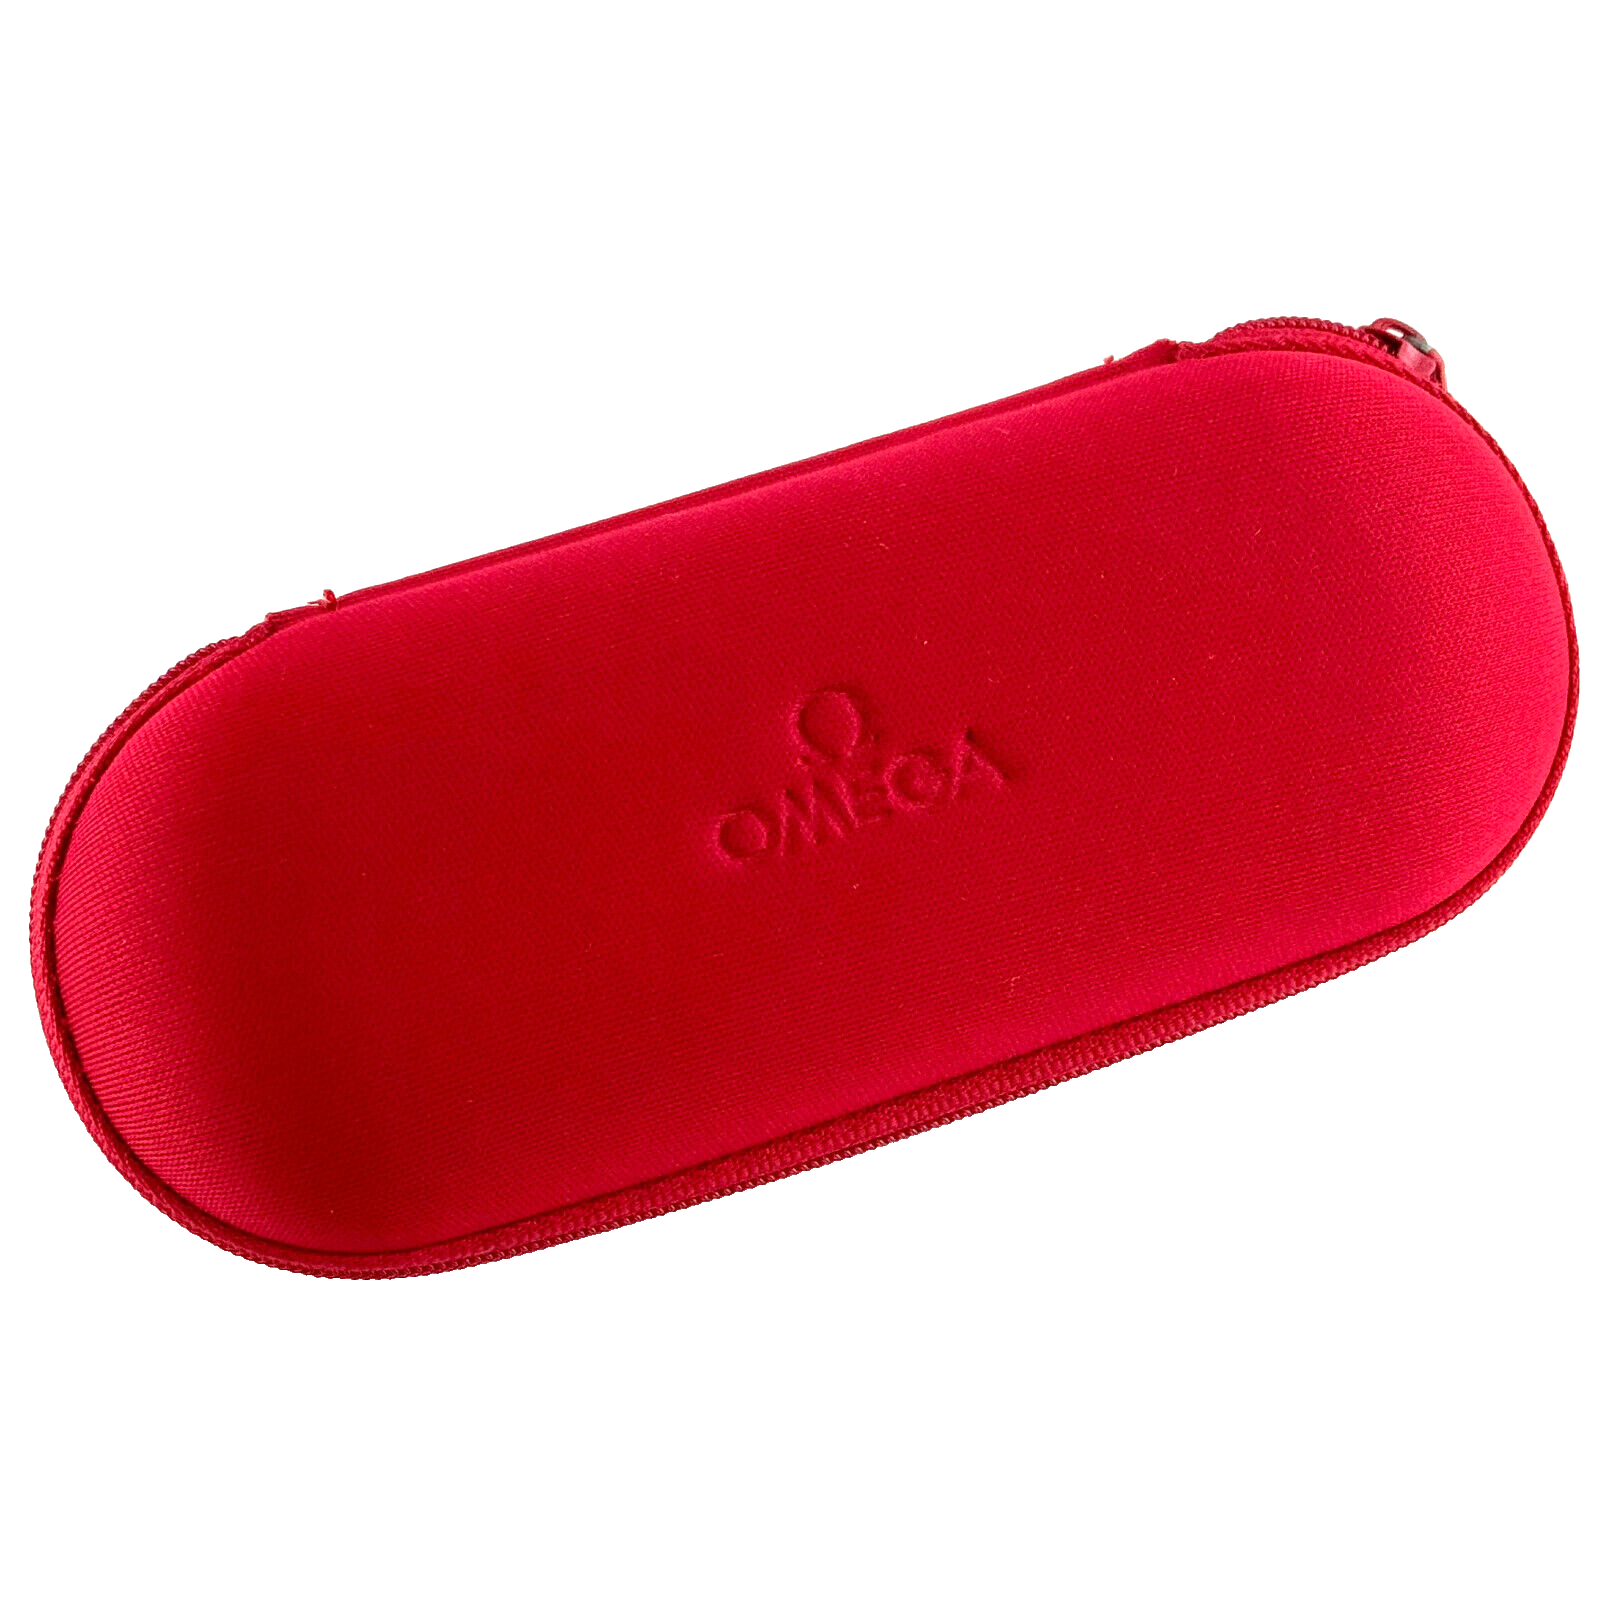 Omega Travel Case Pouch Service Etui Reiseetui Reisebox Uhrenetui Rot Red Kunststoff Box